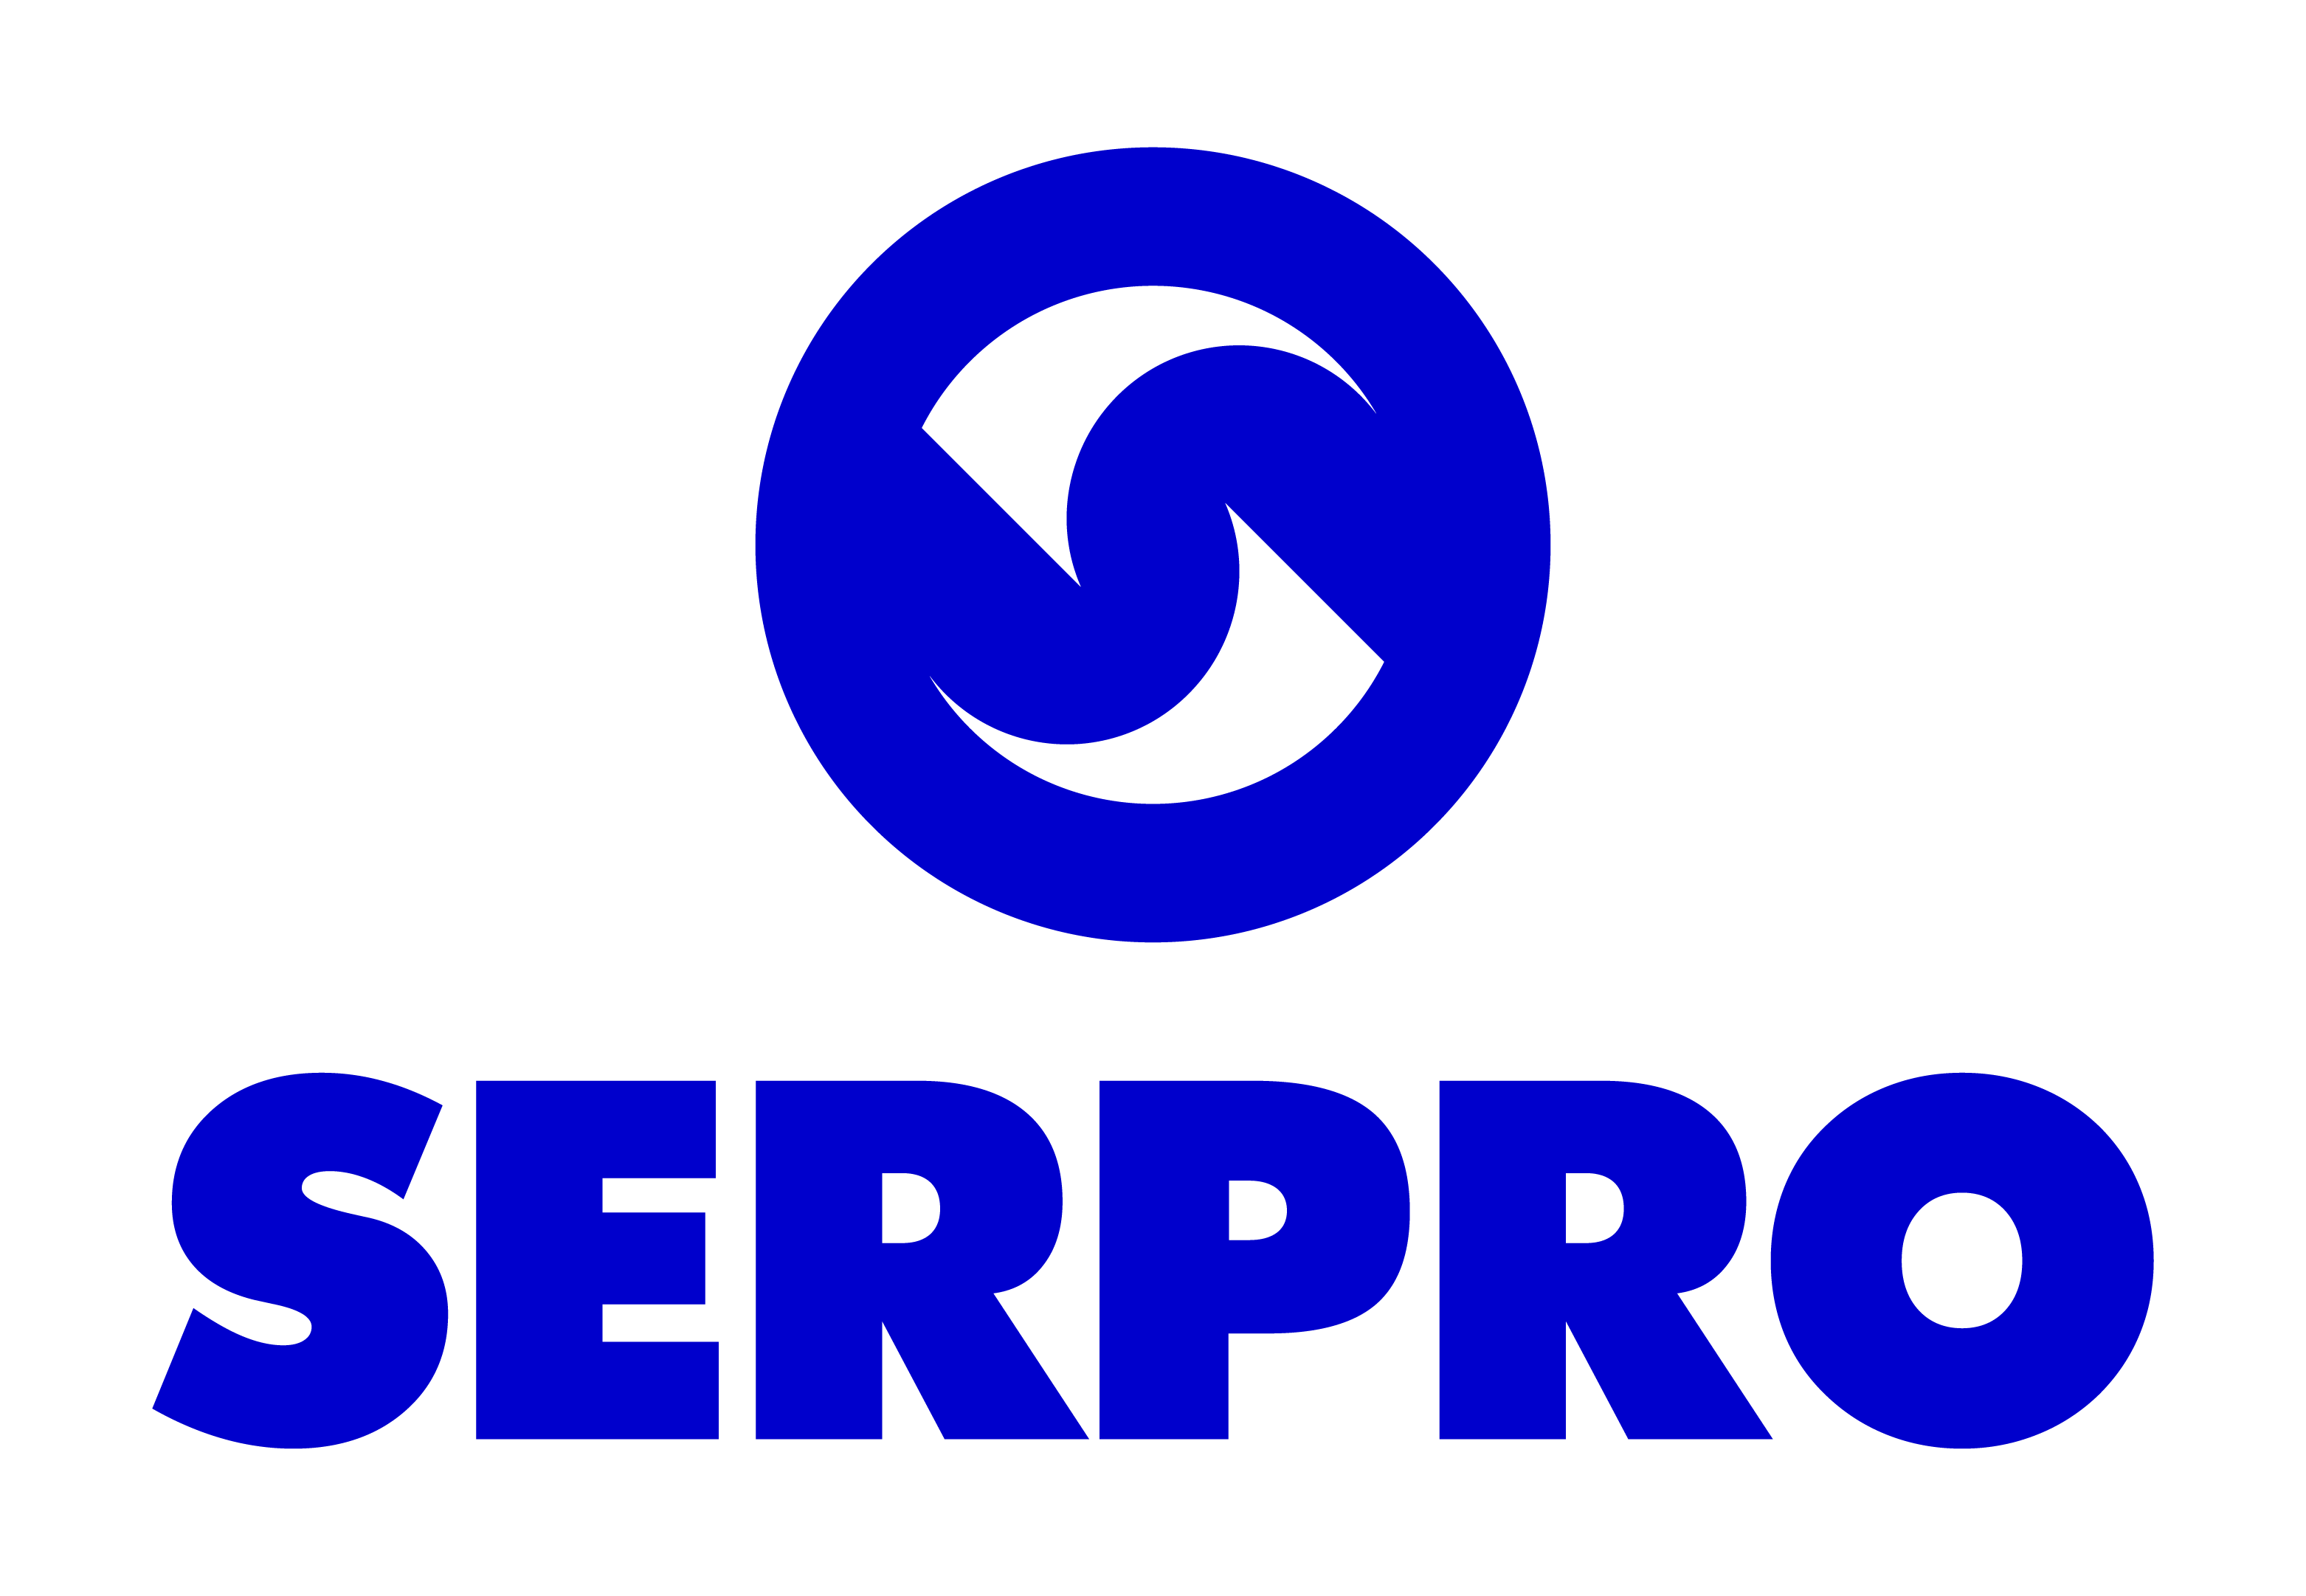 SERPRO - Serviço Federal de Processamento de Dados